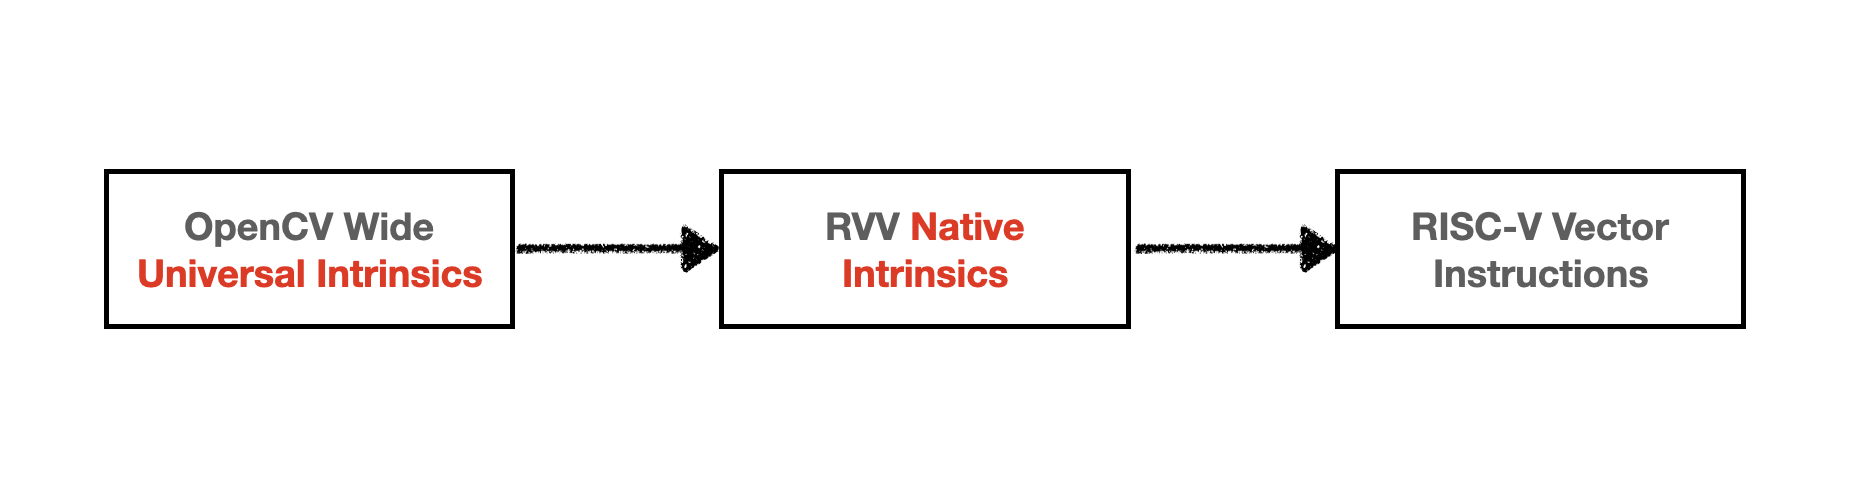 RISC-V Vector Extension implmentation